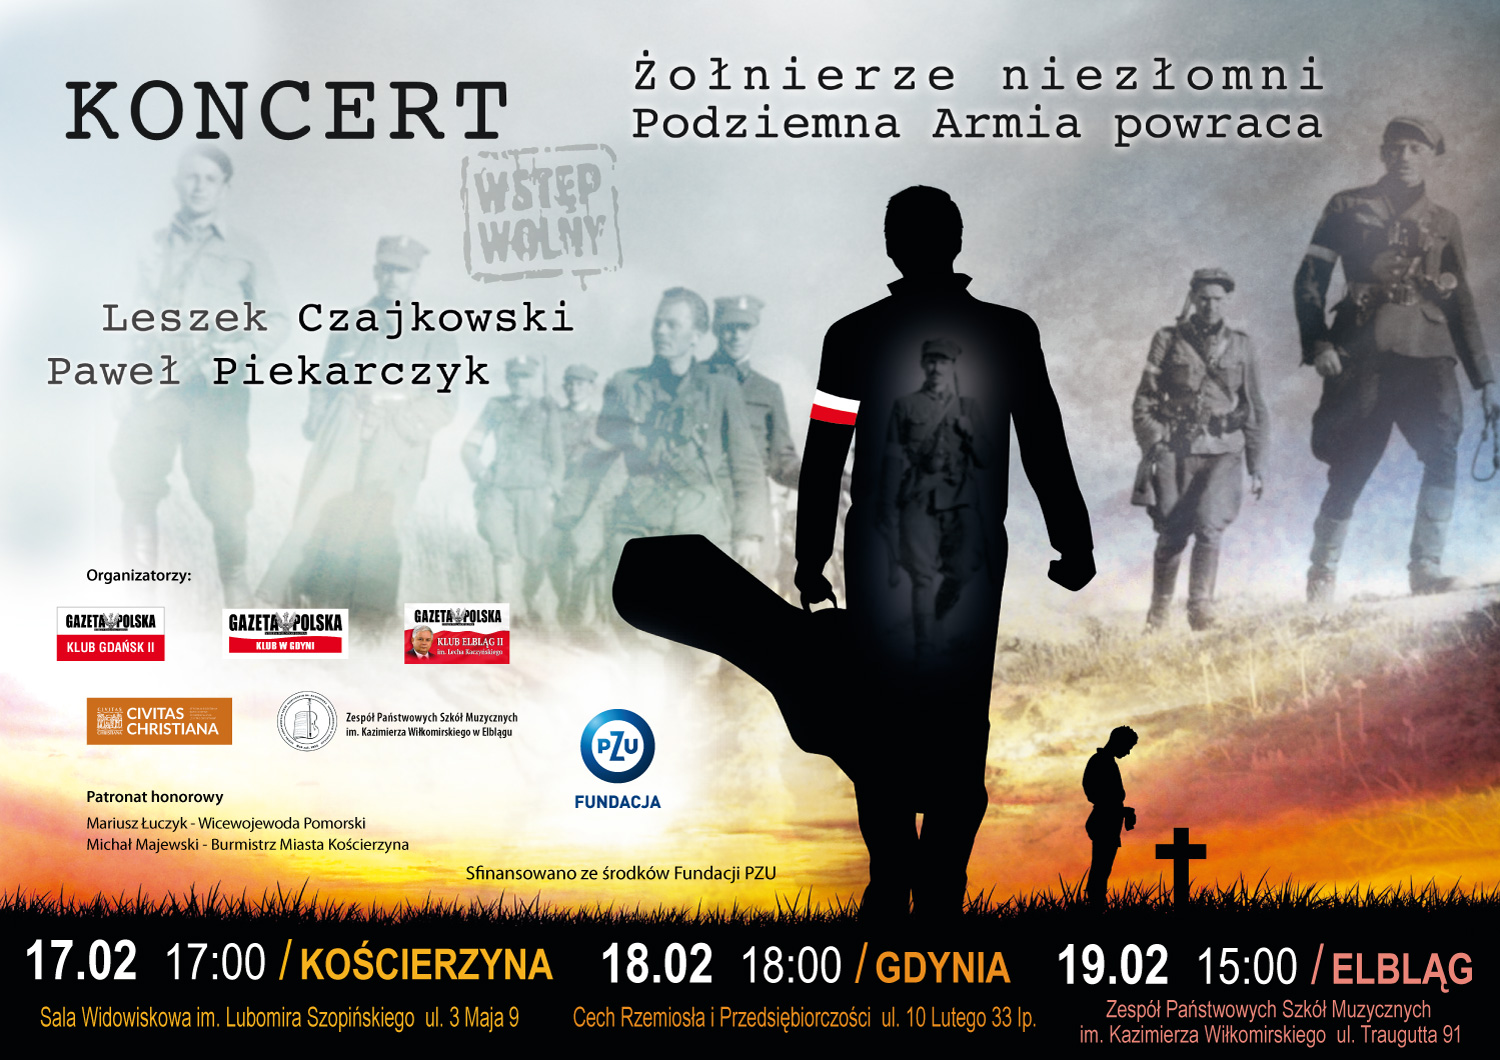 Koncert w Kościerzynie: Żołnierze niezłomni. Podziemna armia powraca